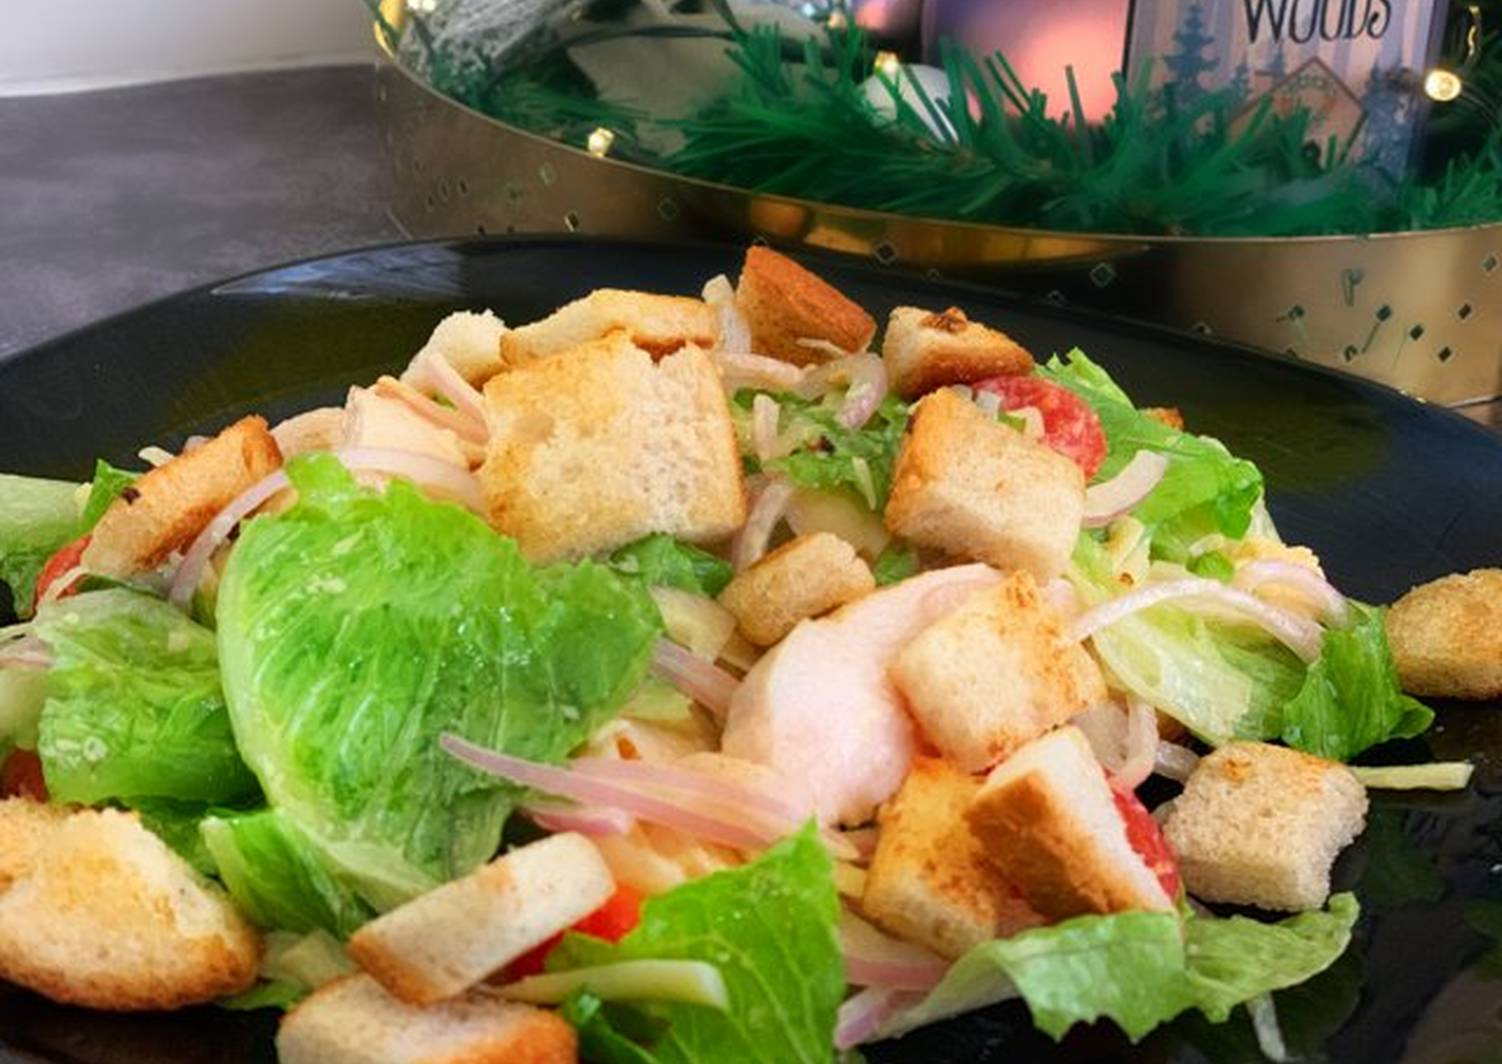 Салат цезарь с курицей в домашних условиях – простые классические рецепты